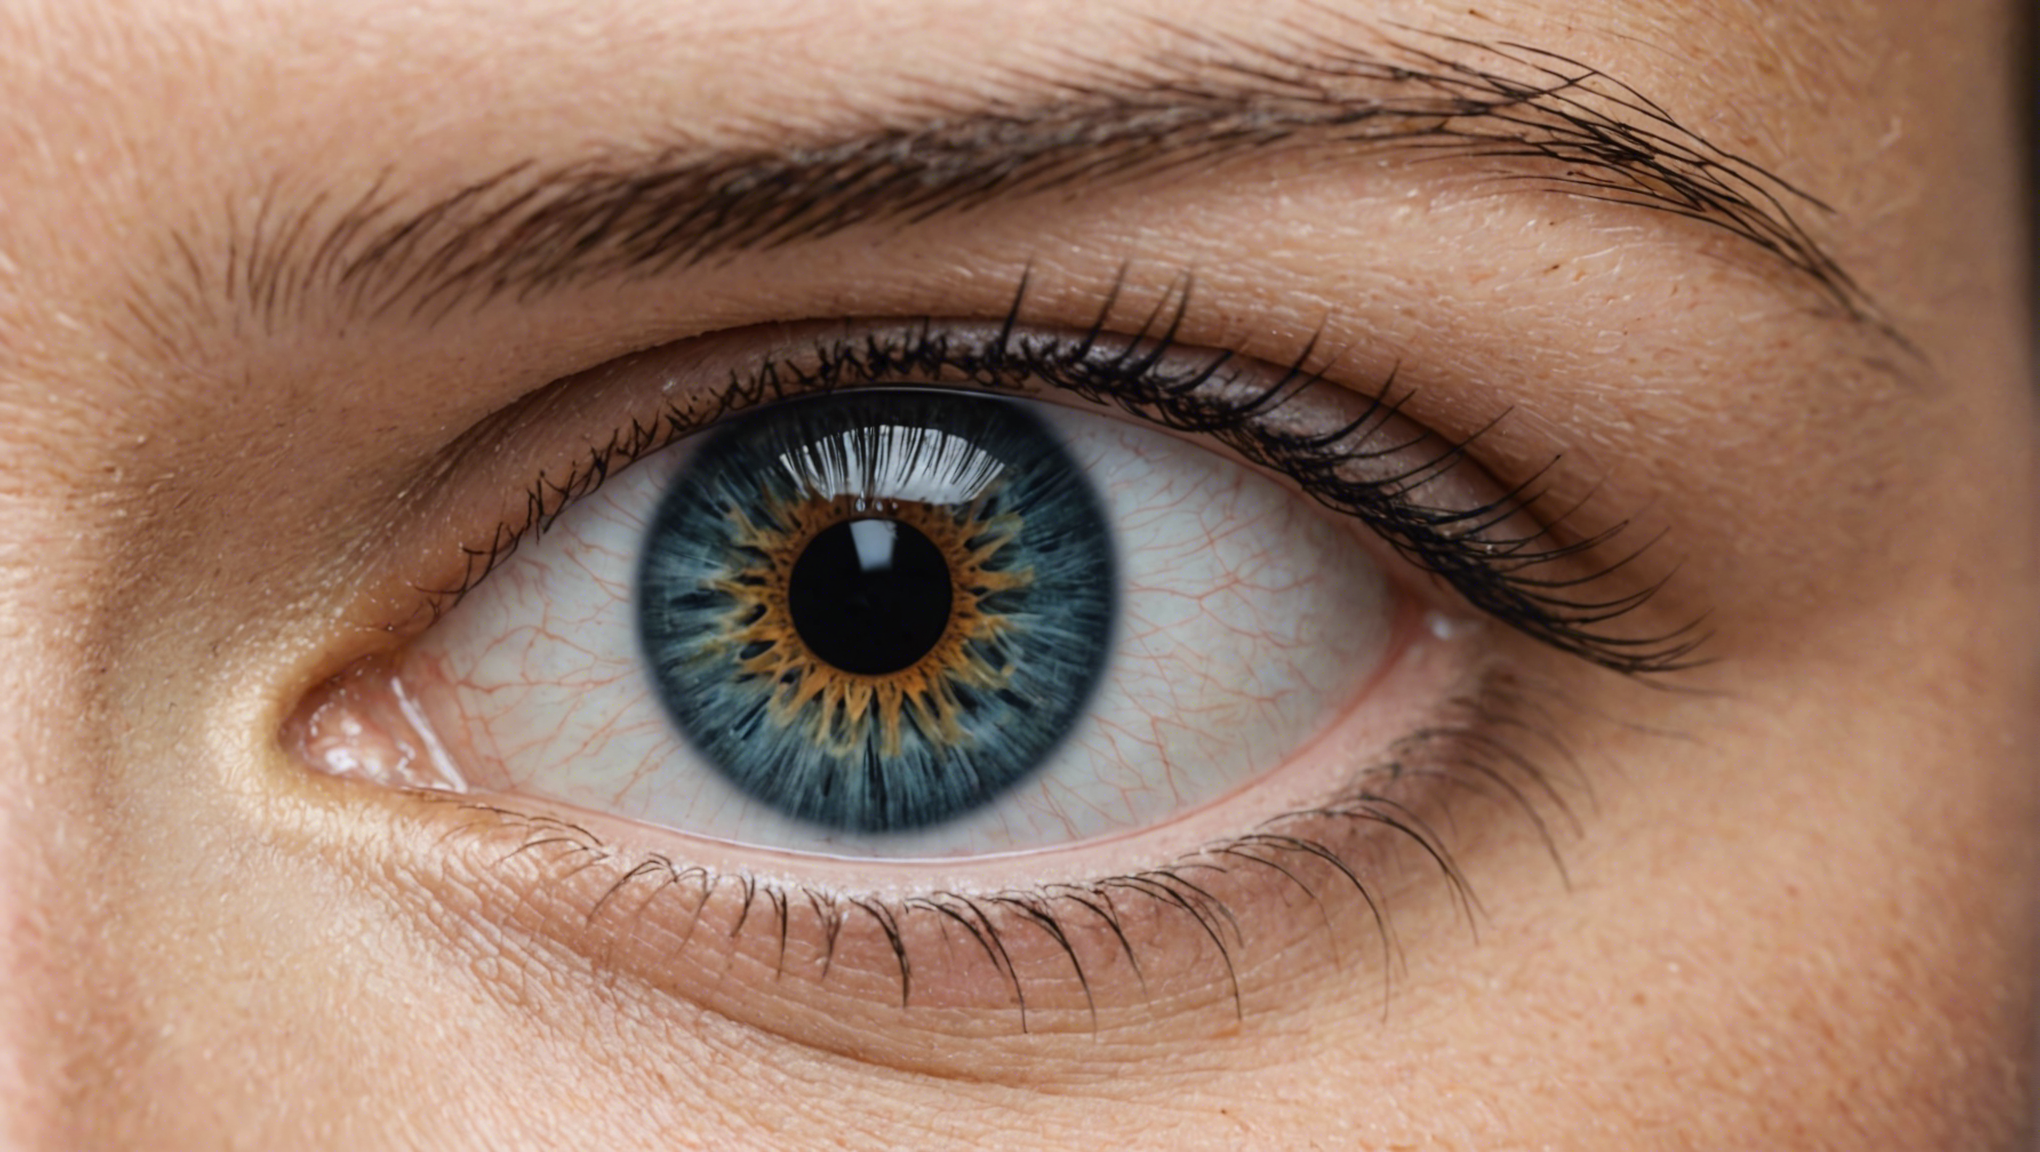 découvrez comment choisir la meilleure technique pour une opération des yeux et retrouver une vision claire et nette. informations sur les différentes options de chirurgie ophtalmologique.